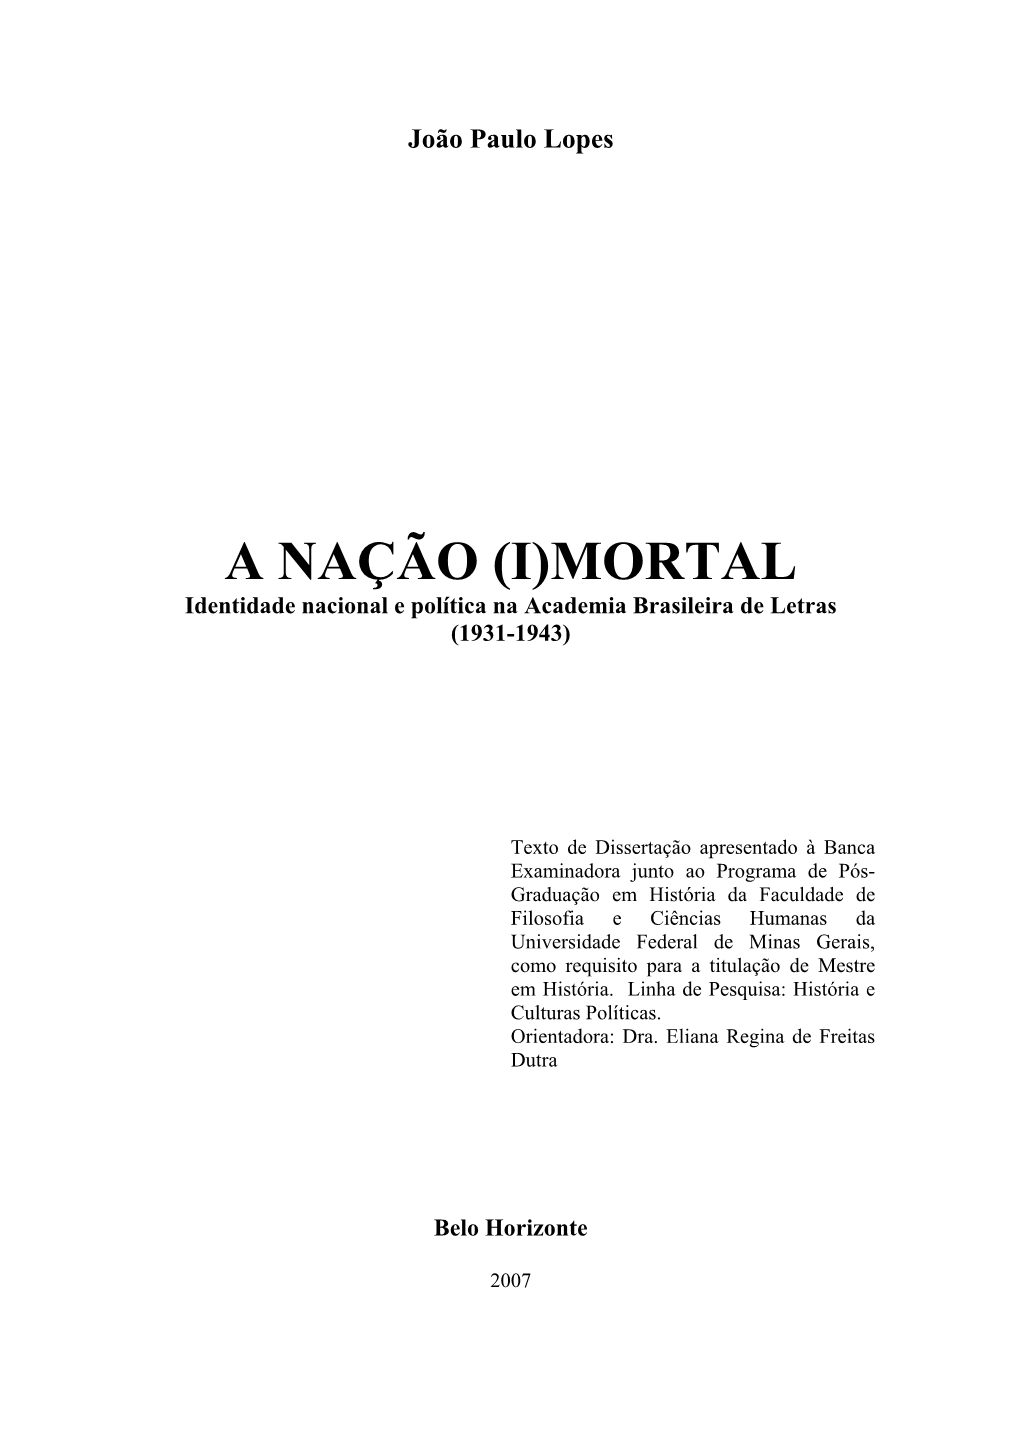 João Paulo Lopes a NAÇÃO (I)MORTAL